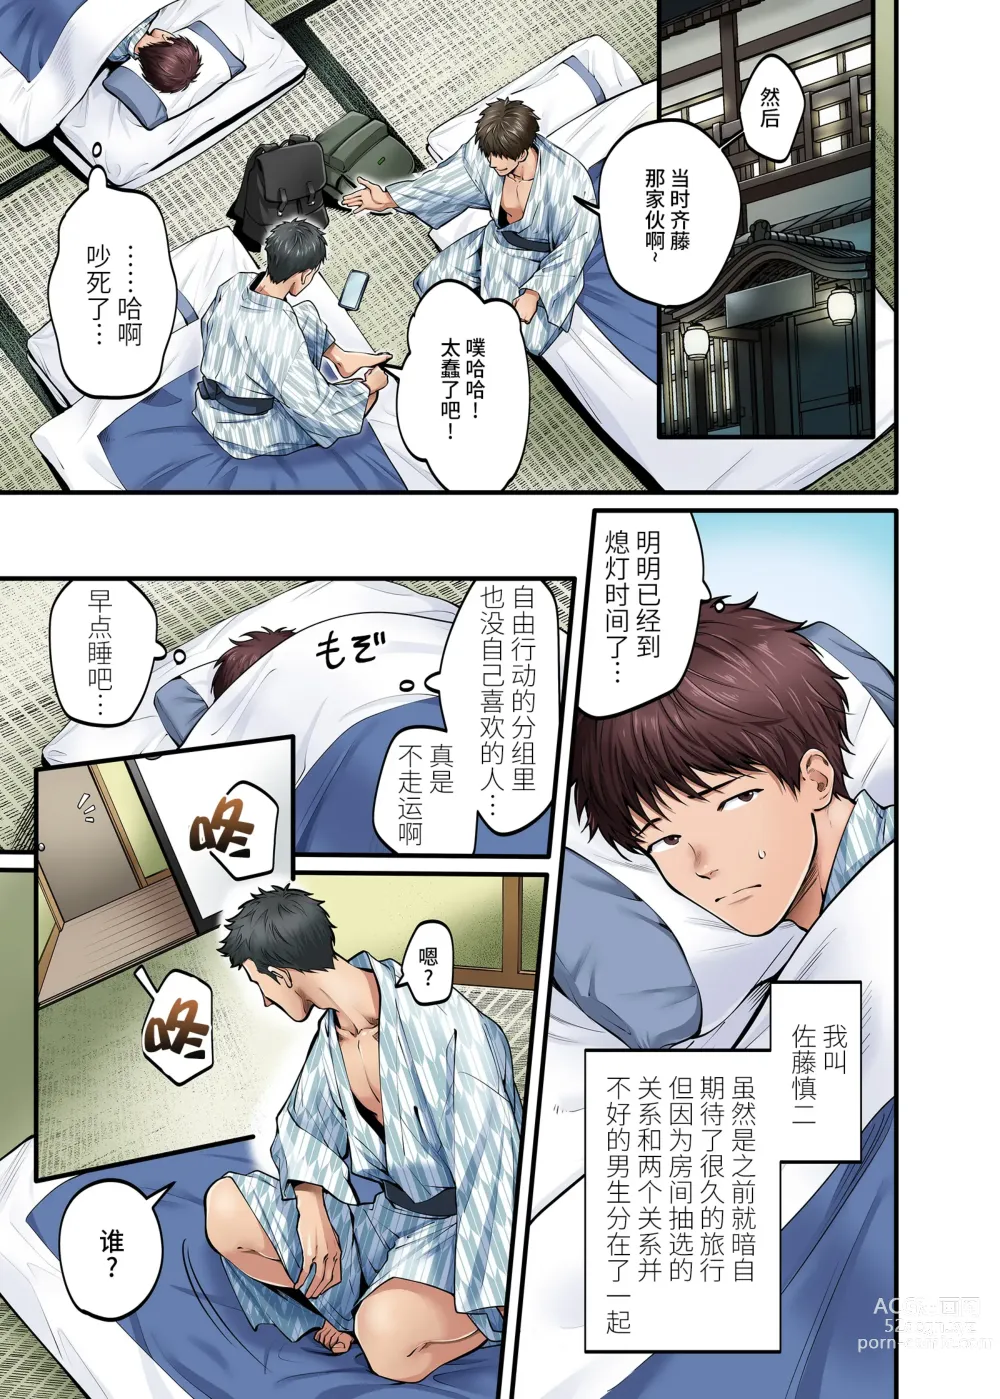 Page 7 of doujinshi Shuugaku Ryokou Gentei -1-nichime-